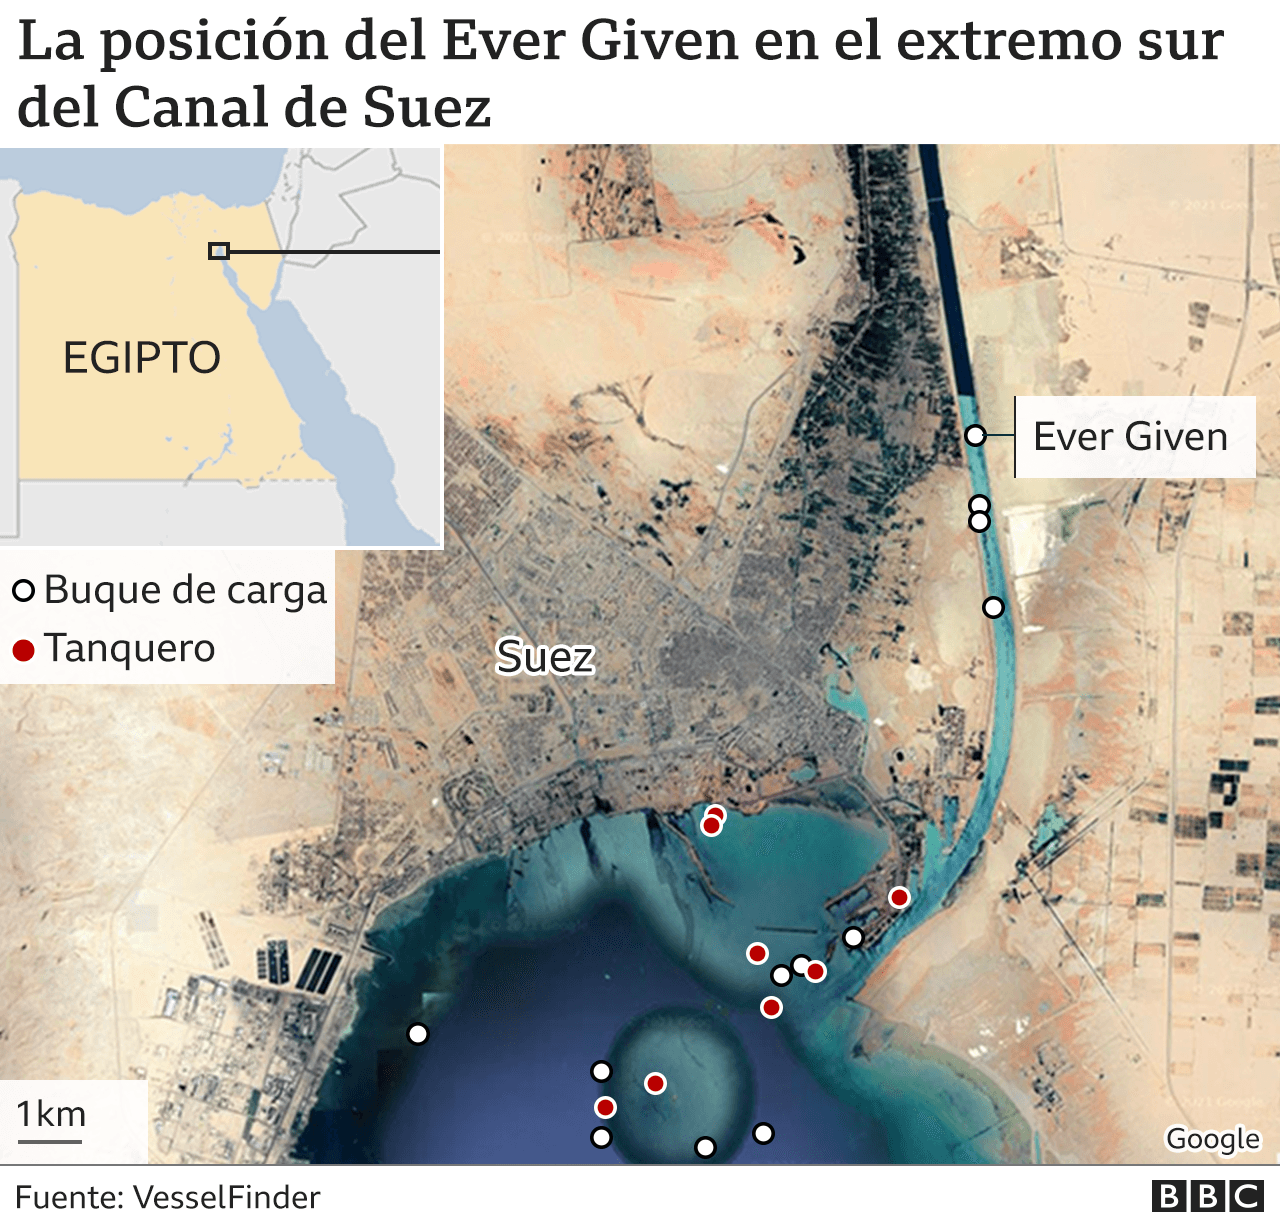 Reflotan el buque que bloquea el canal de Suez • Canal C